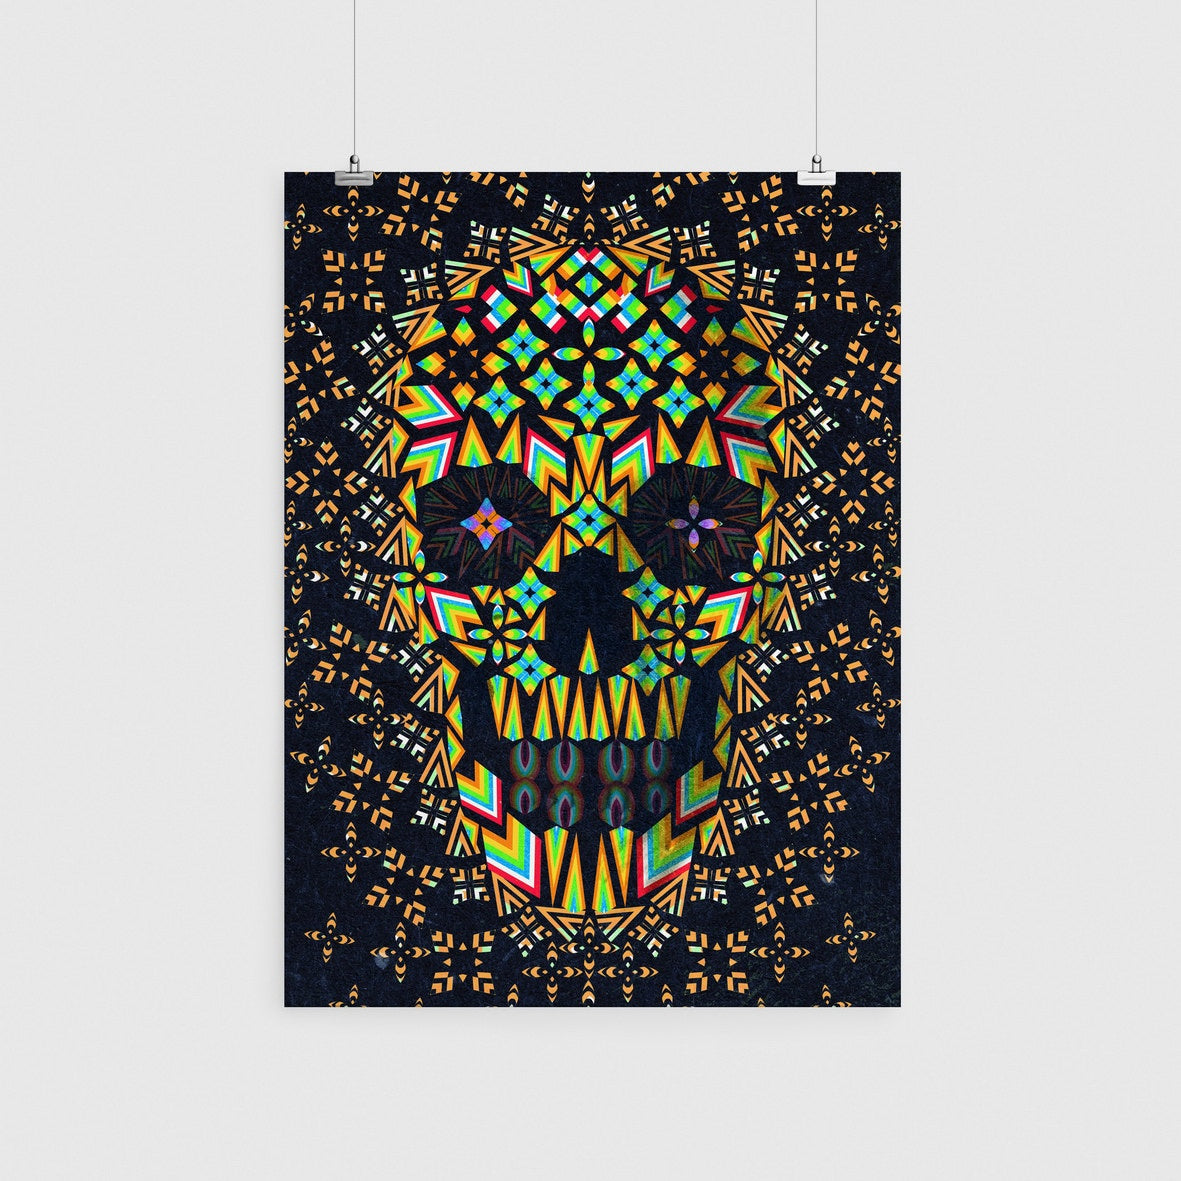 Abstract Skull Poster, Colorful Skull Art Print, Geometric Skull Wall Art, Skull Art Gift, Gothic Skull Decor, Pattern Skull Art Home Decor